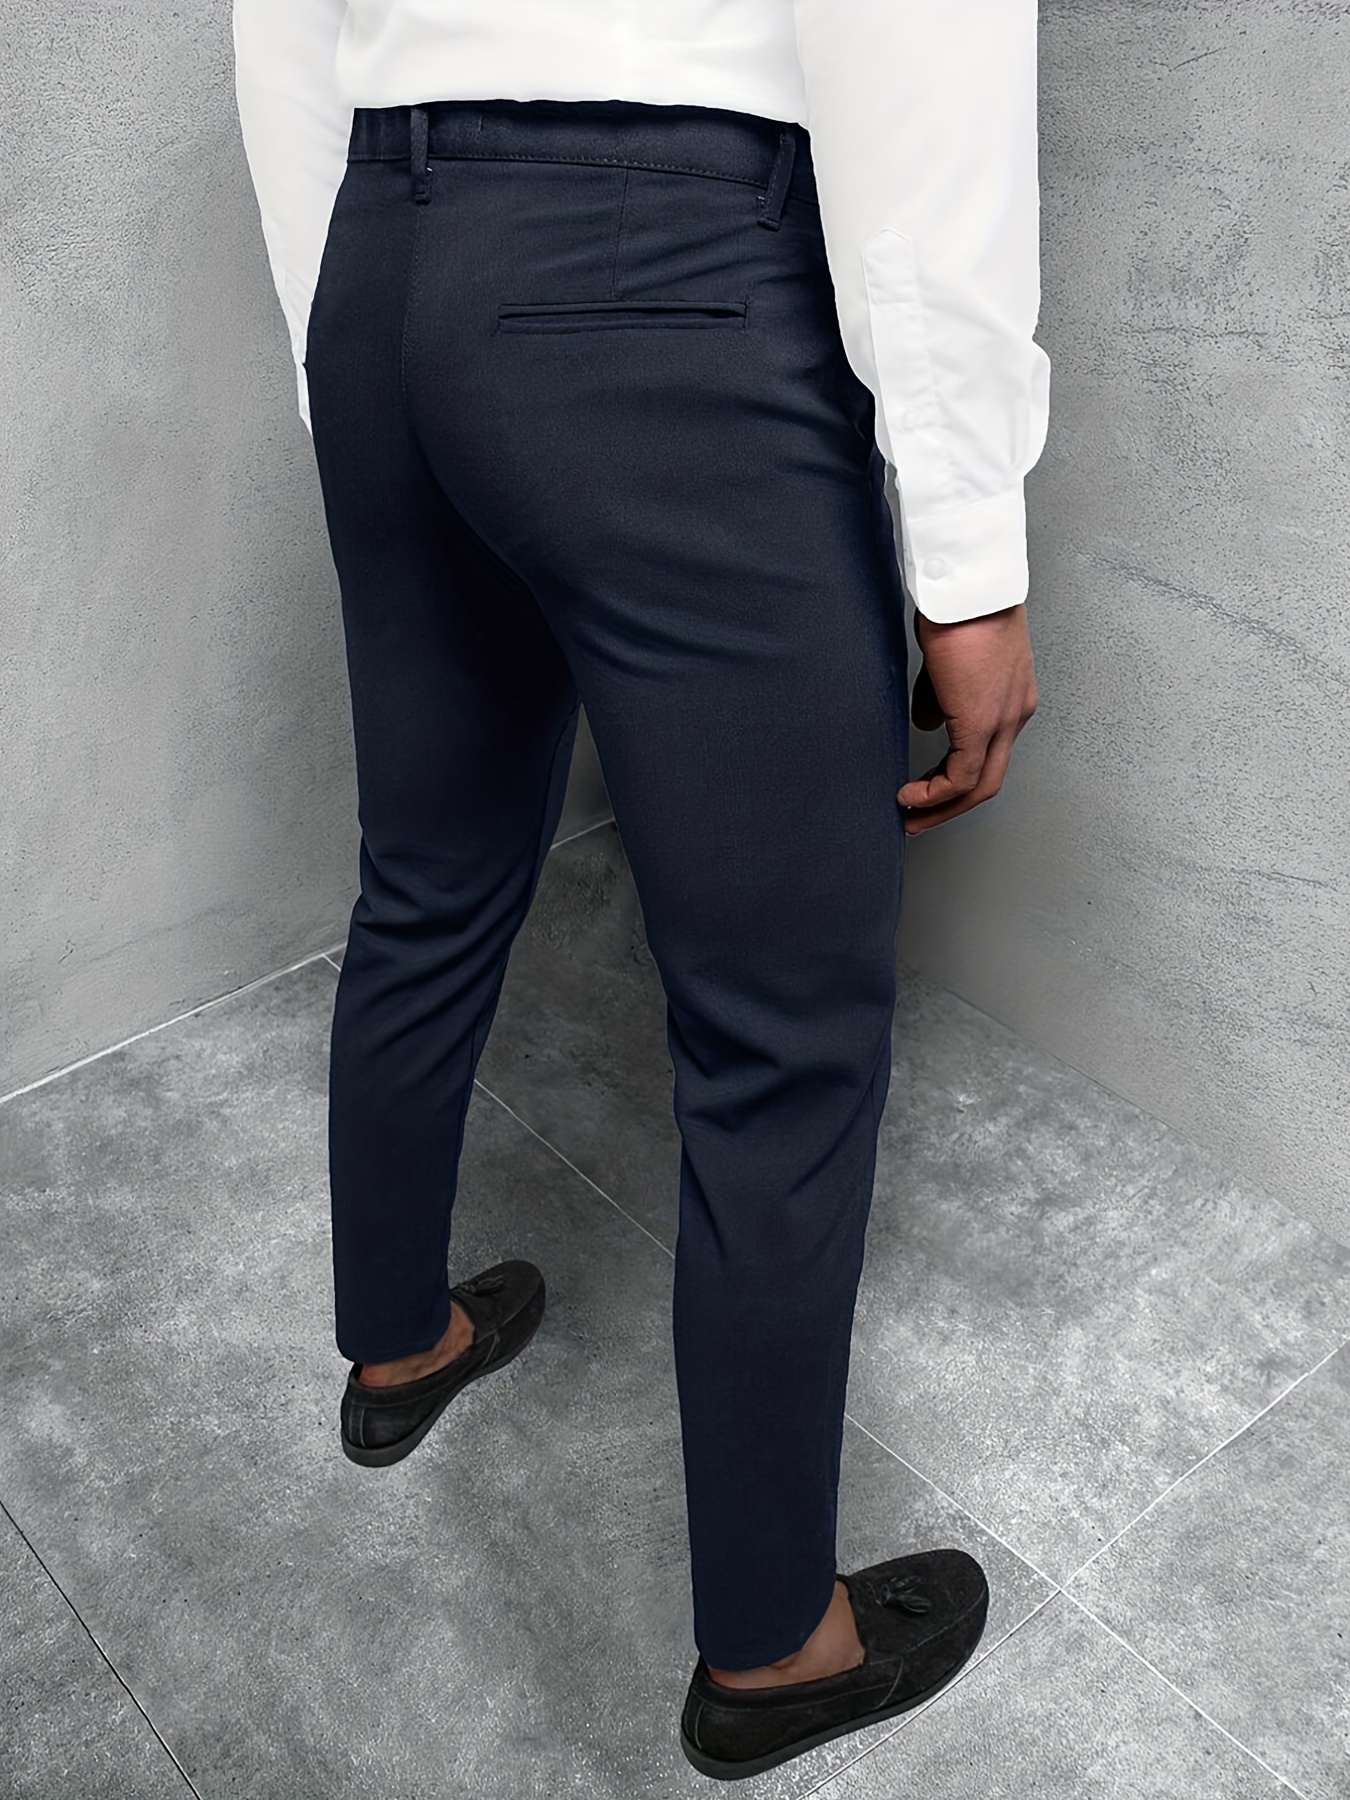 Men's Casual Pencil Pants Slim Fit Skinny Business Formal Dress